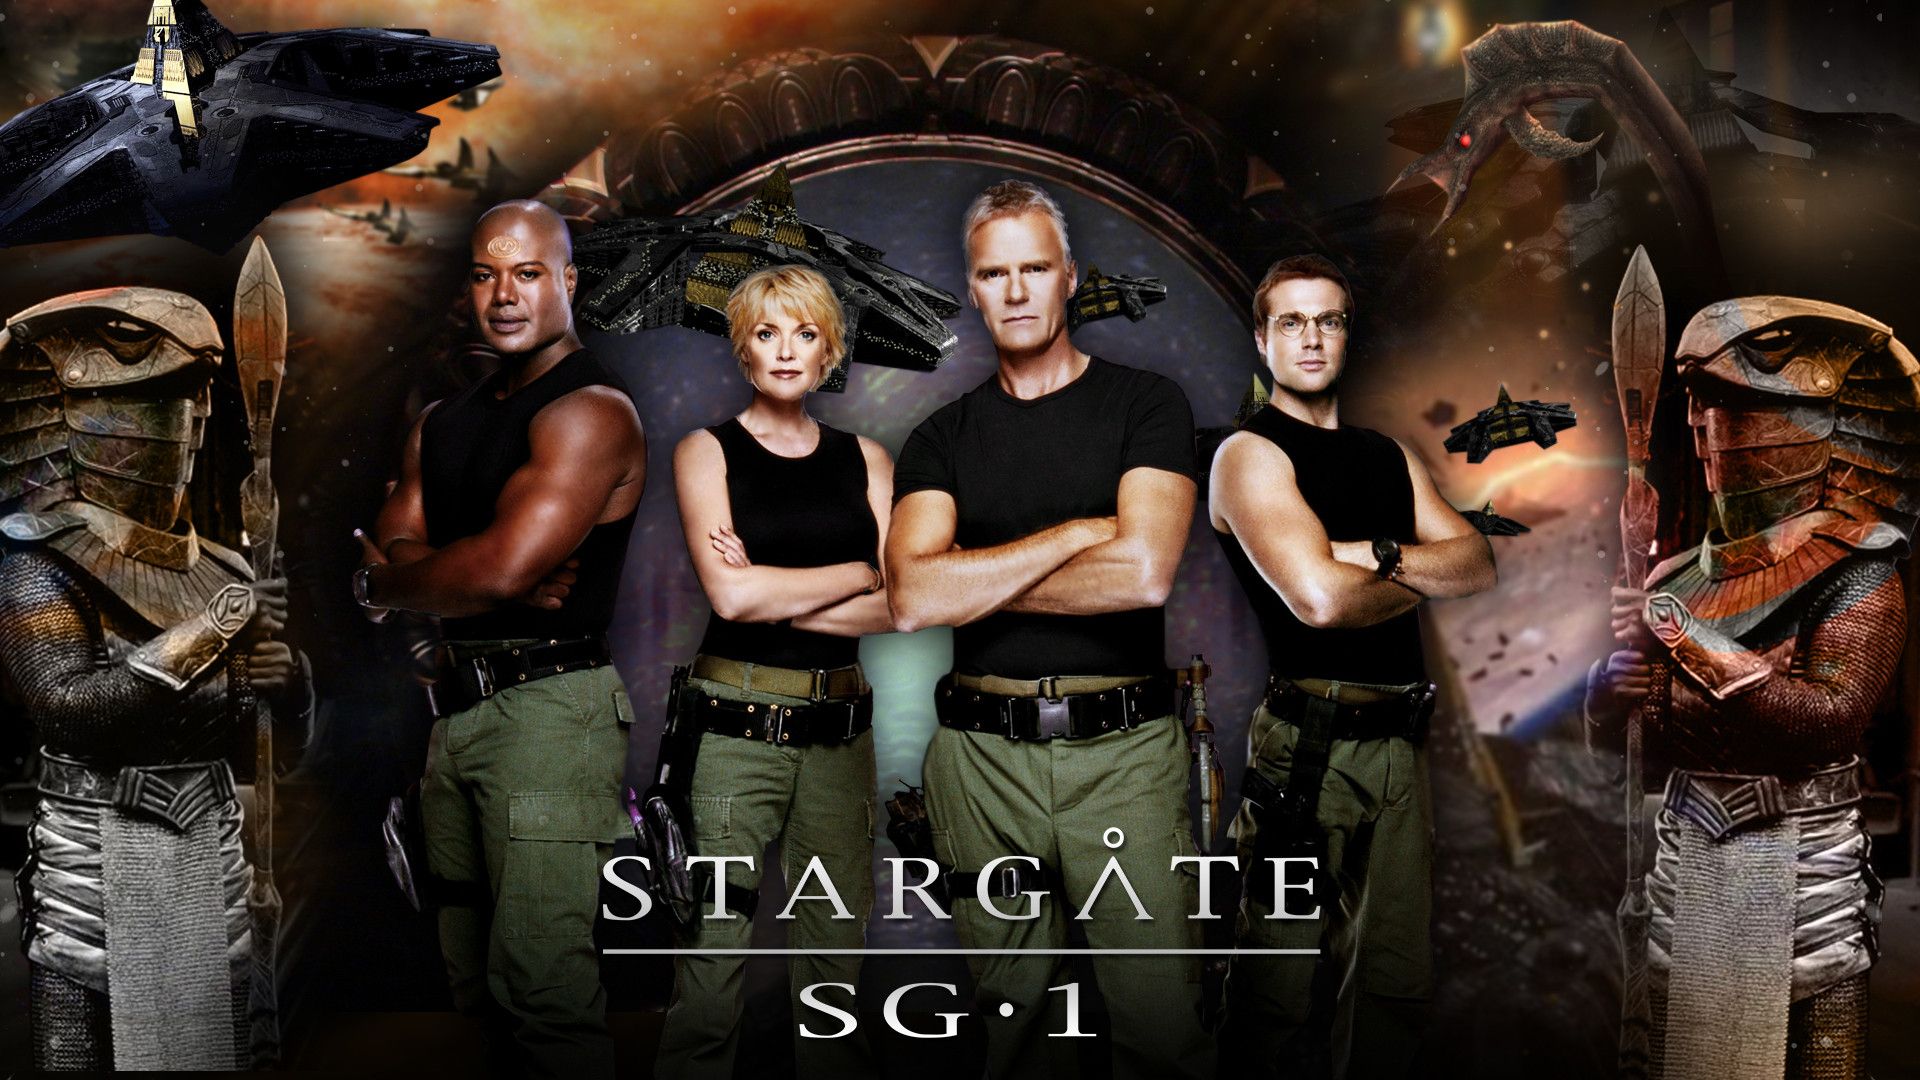 Stargate Sg-1 Wallpapers